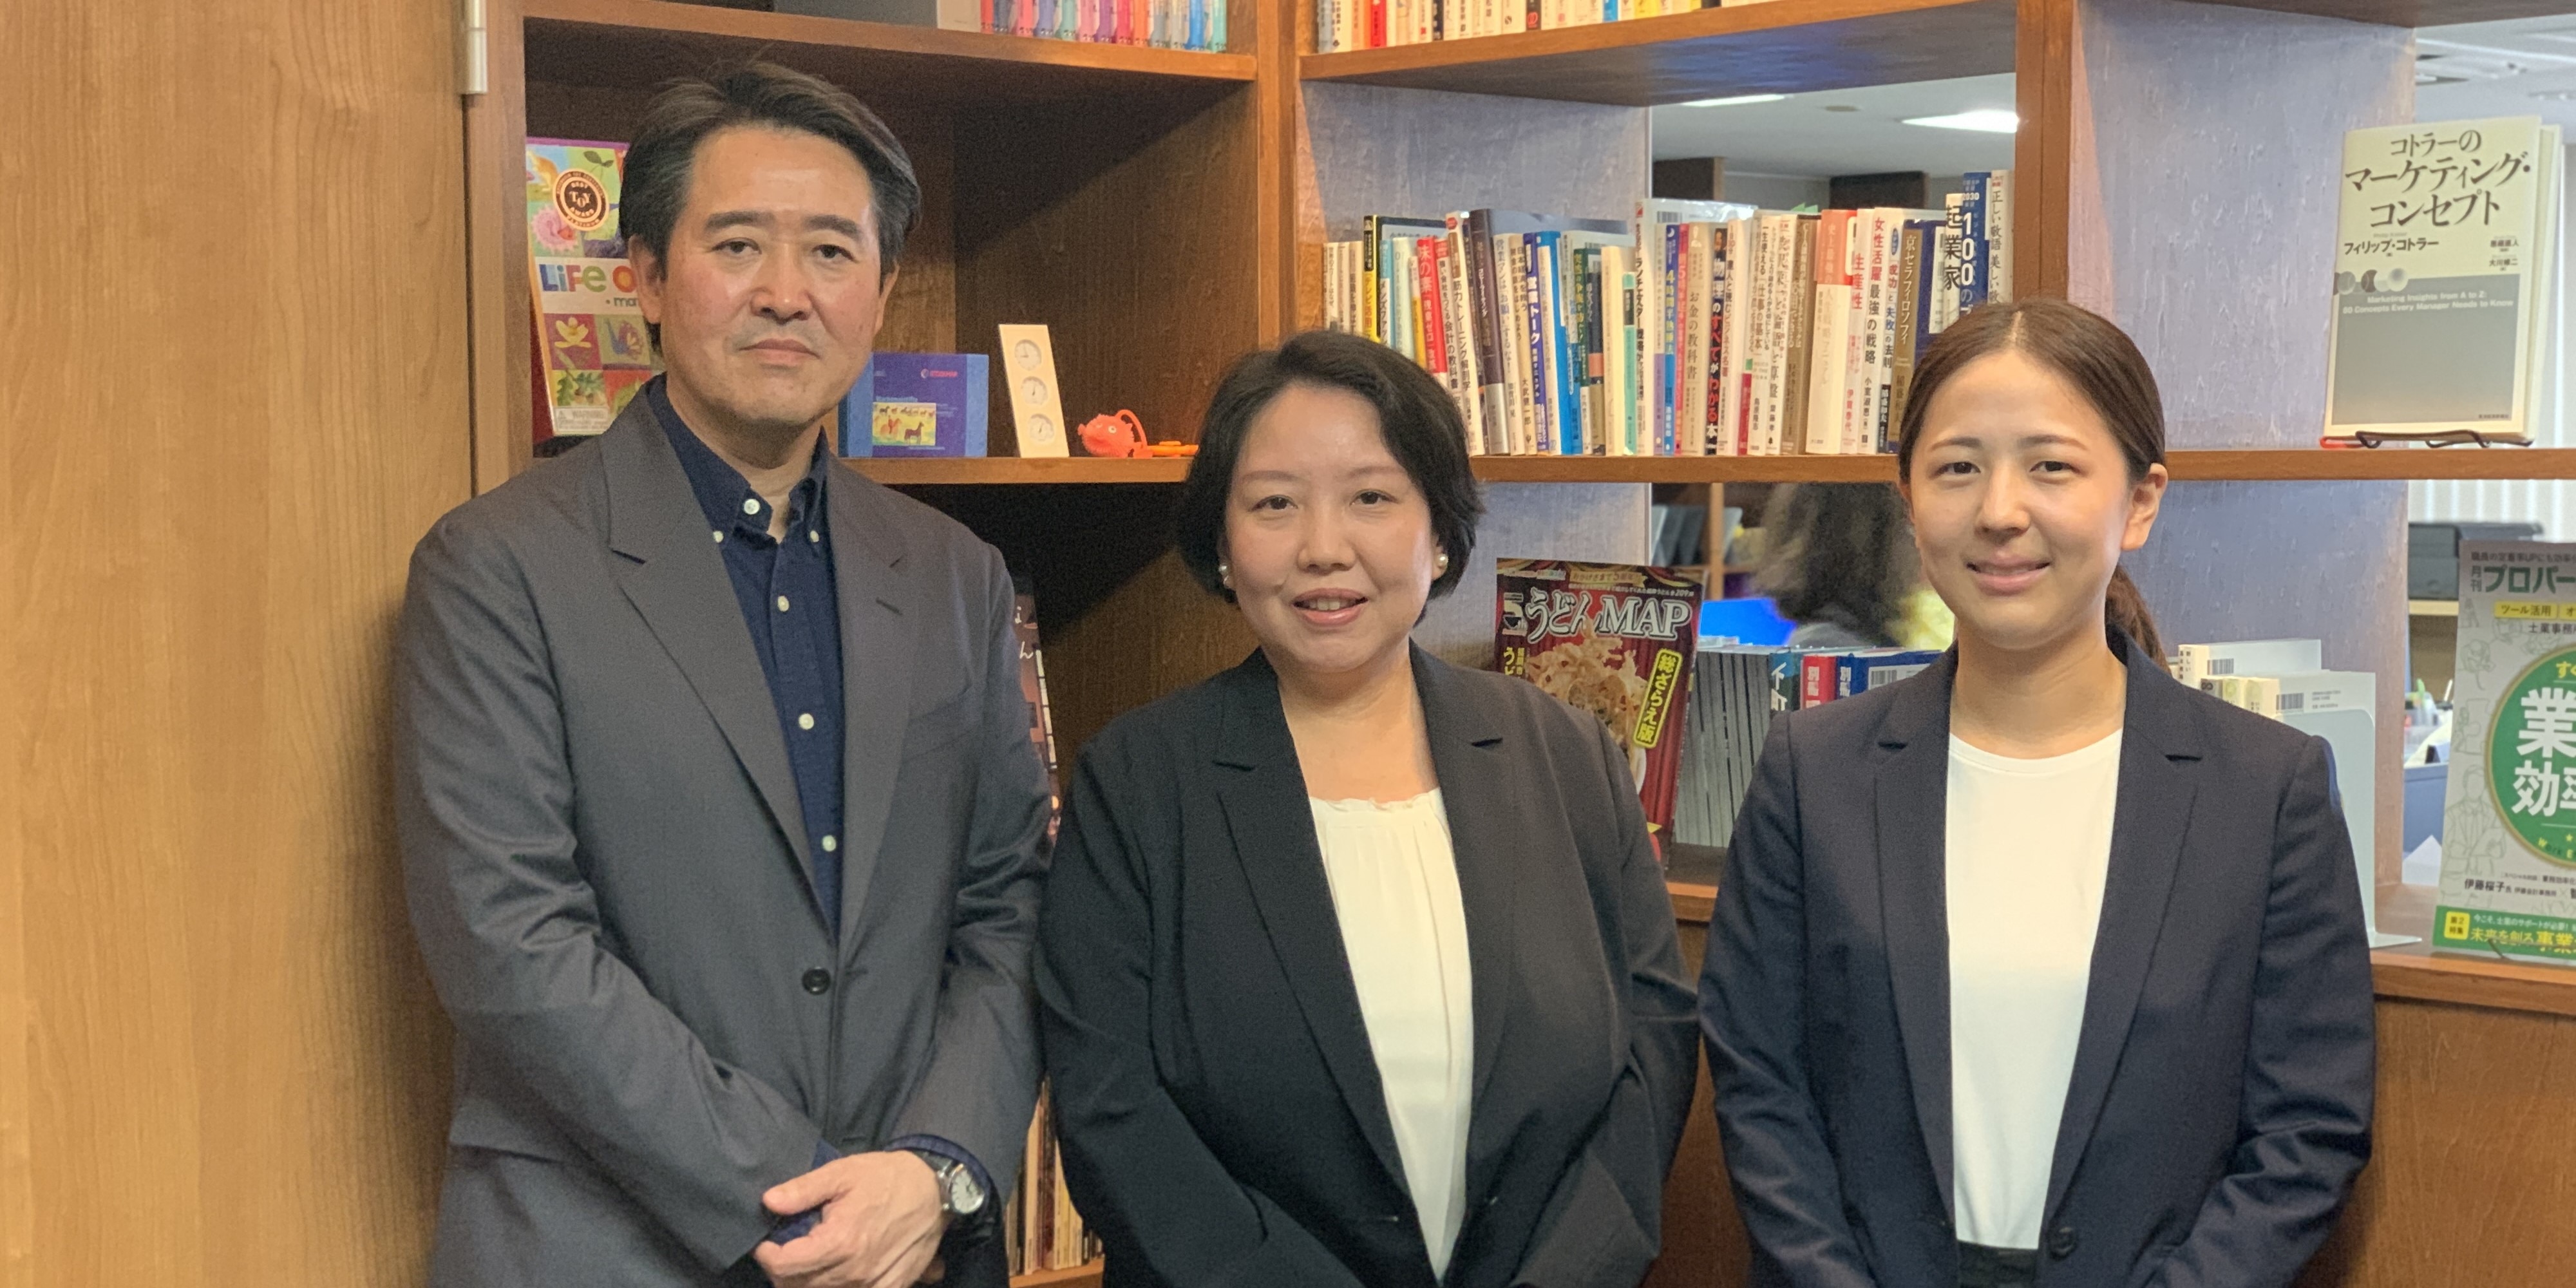 伊藤会計事務所の所長 伊藤桜子さん（中央）、相良義則さん（左）、田中さん（右）